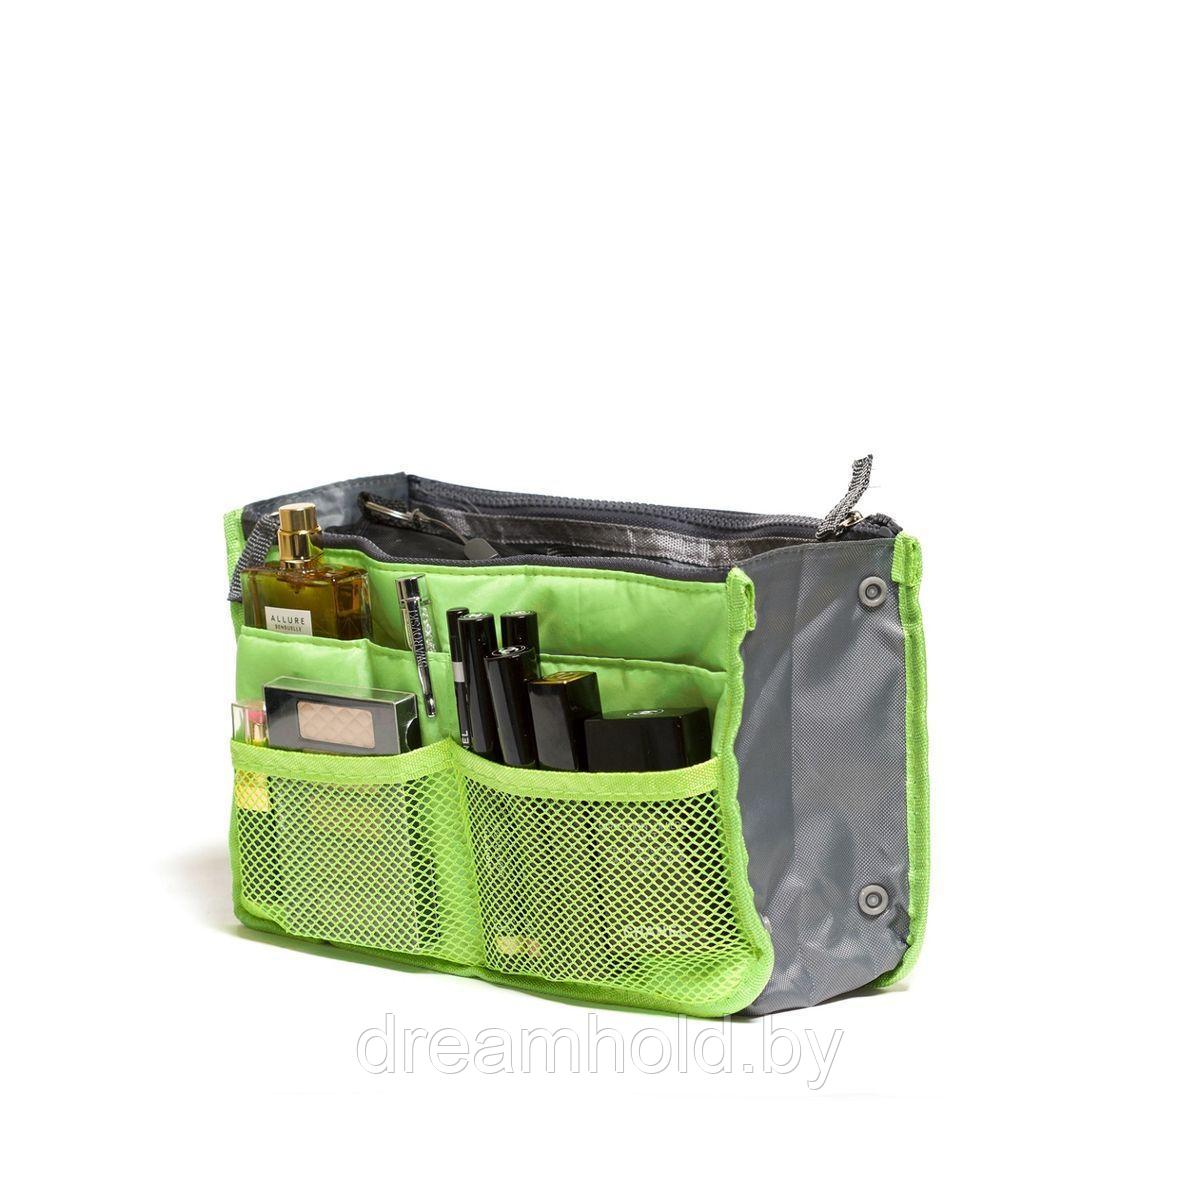 Органайзер для сумки "Homsu", цвет: светло-зеленый, 30 x 8,5 x 18,5 см